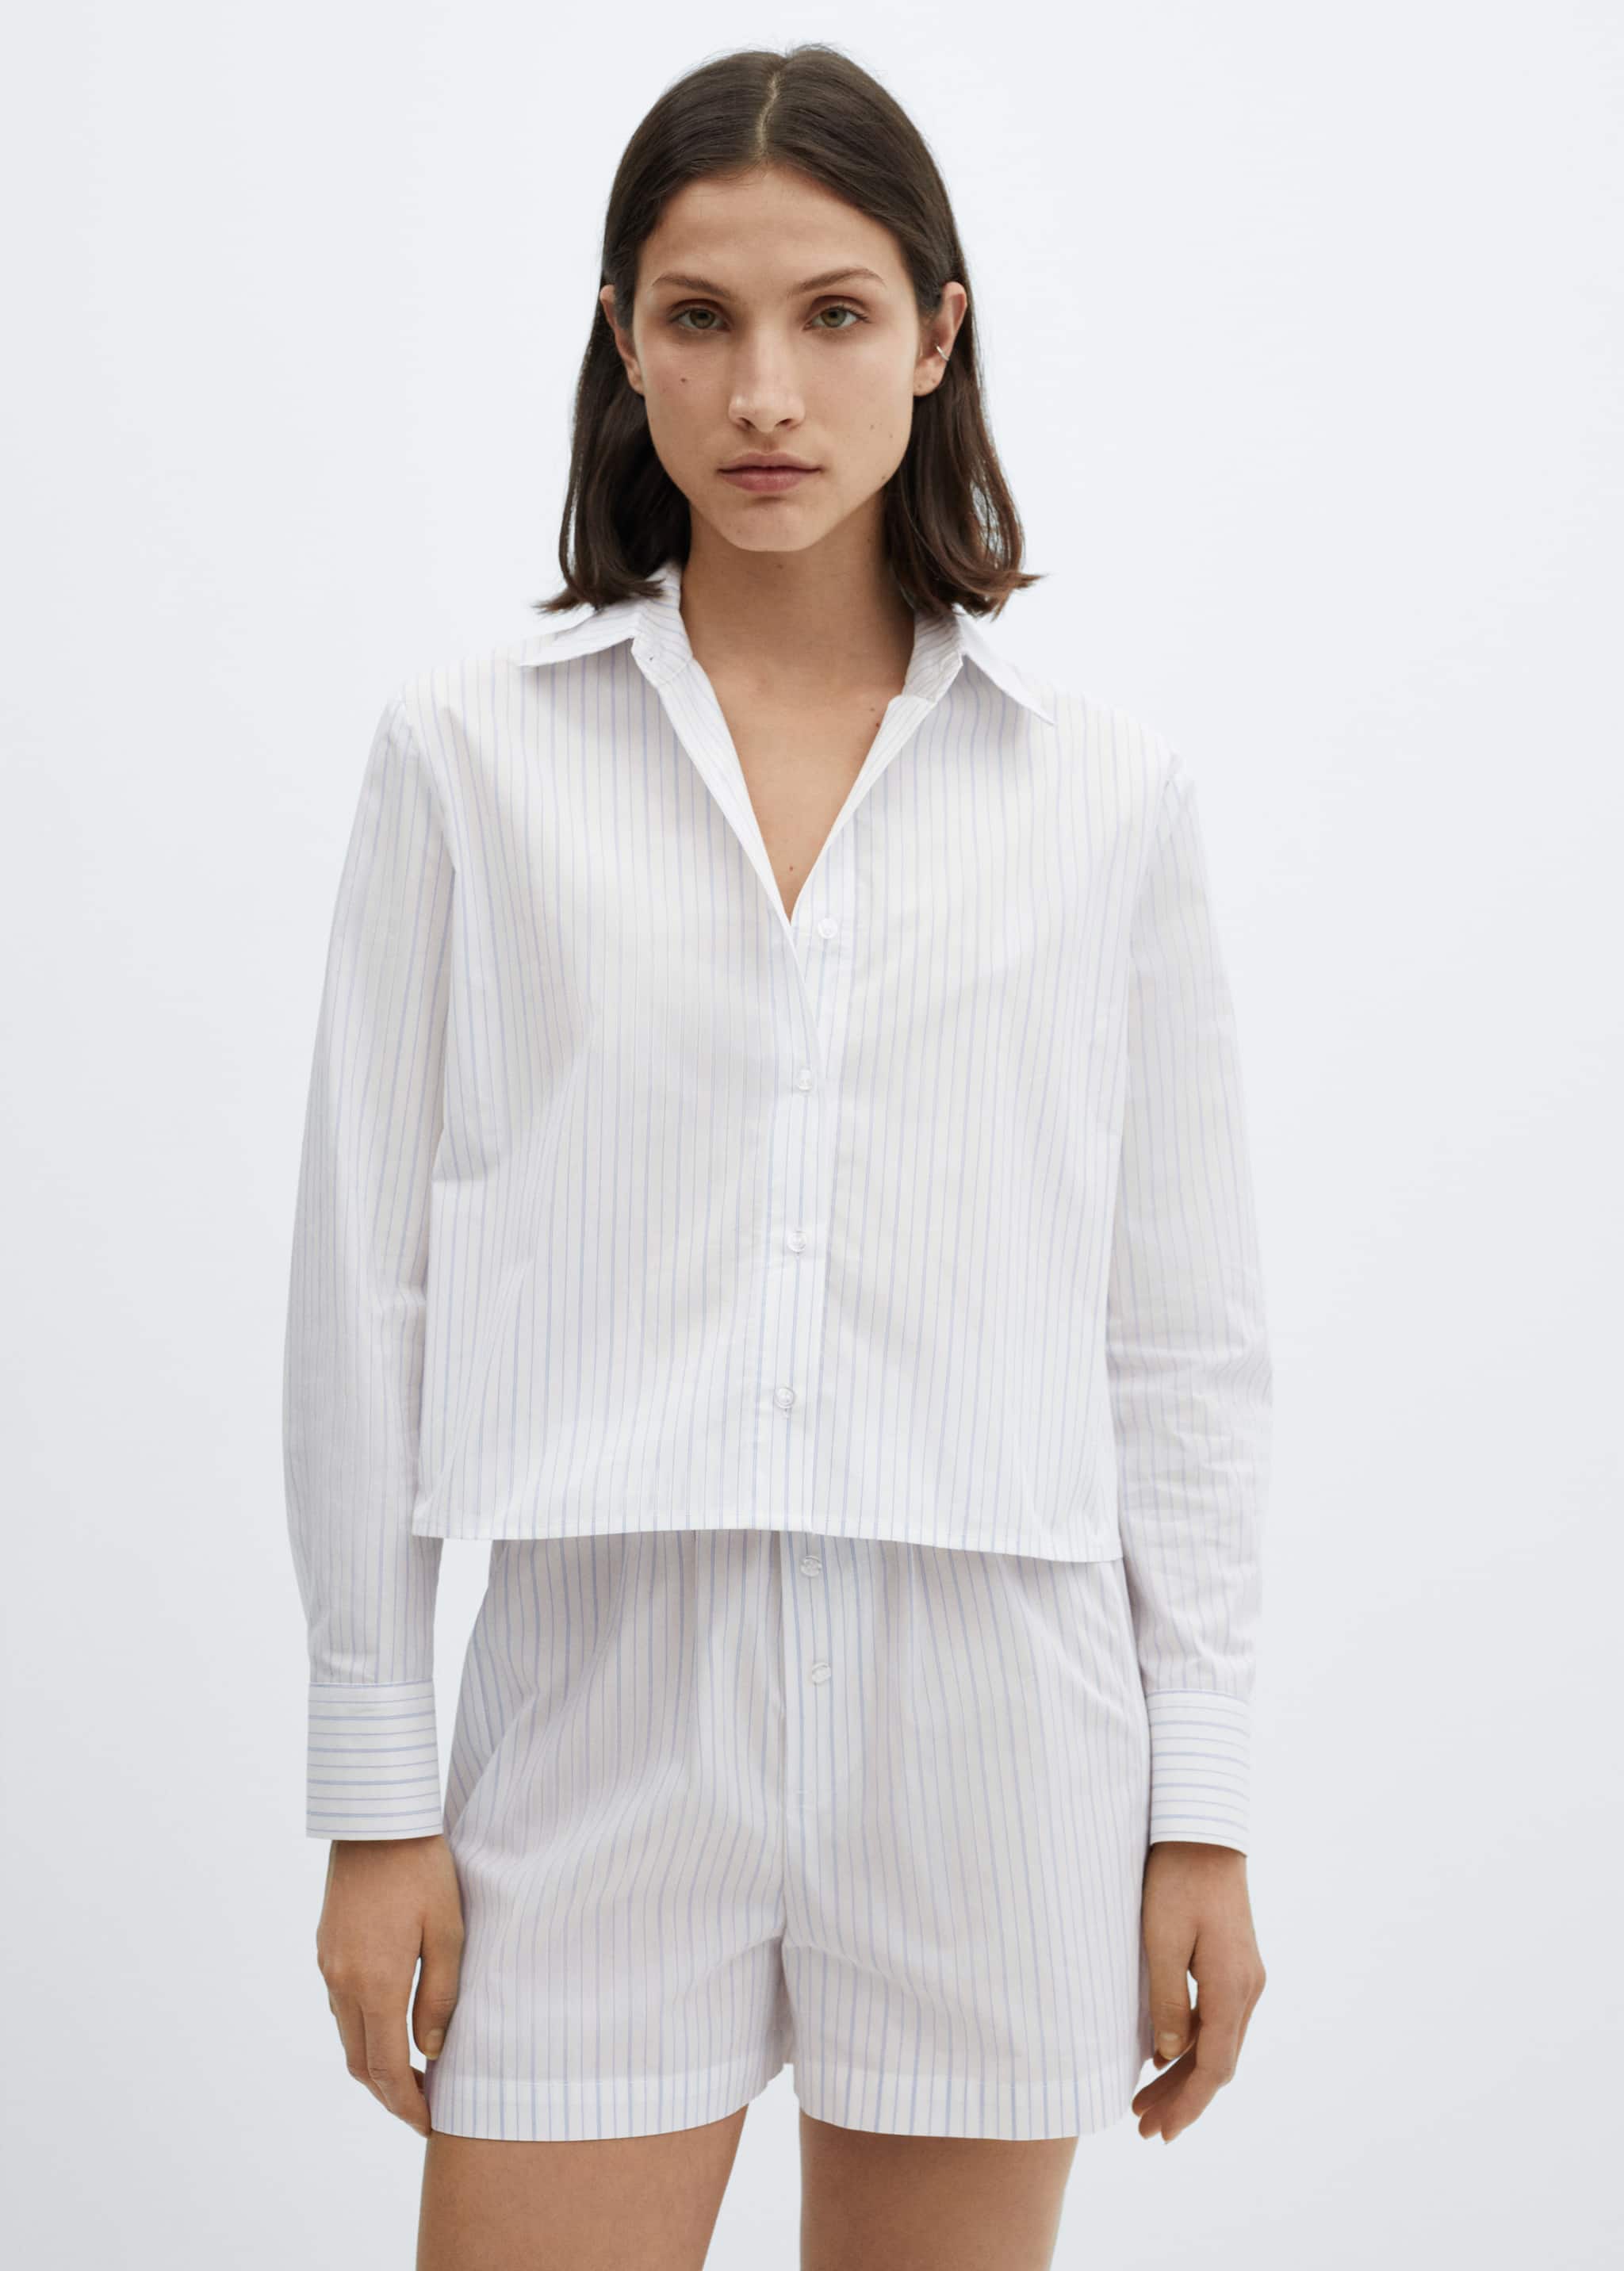 Two-piece striped cotton pyjamas - Medium plane